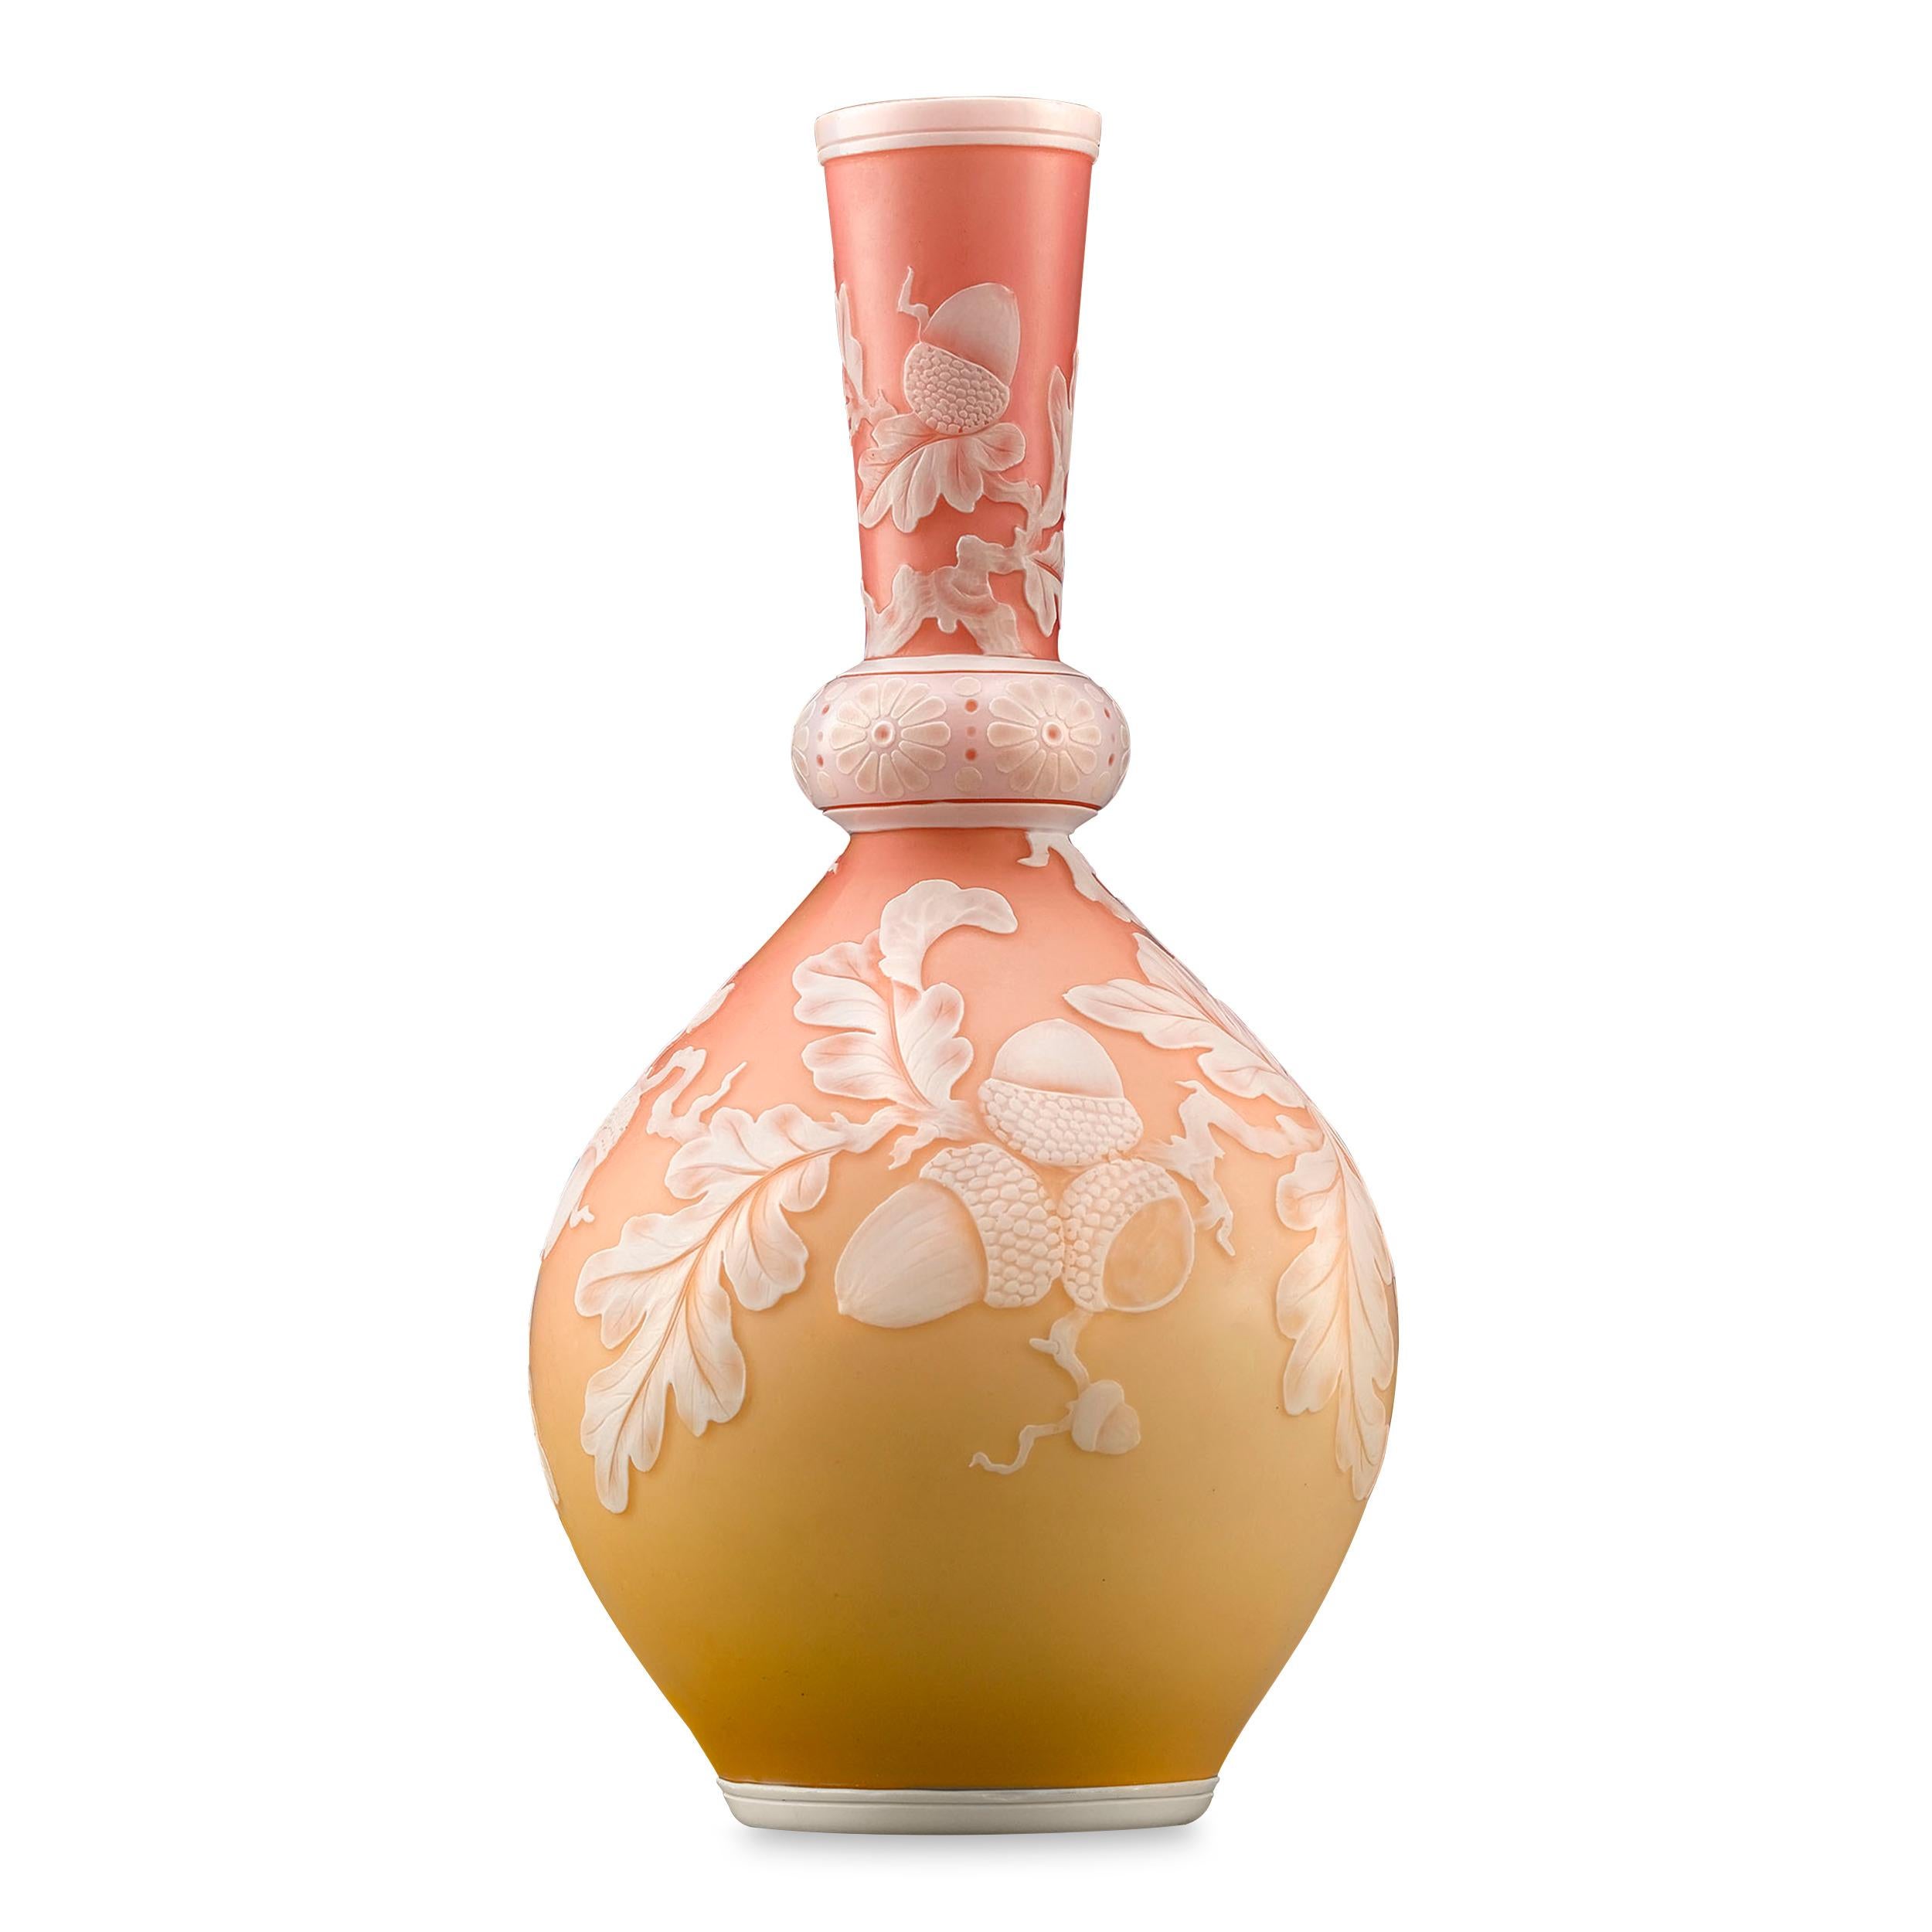 Eine schöne englische pfirsichfarbene Kamee-Glasvase, verziert mit einem Blattrankenmotiv. Ausgezeichneter Zustand.

CIRCA 1880

Maße: 5